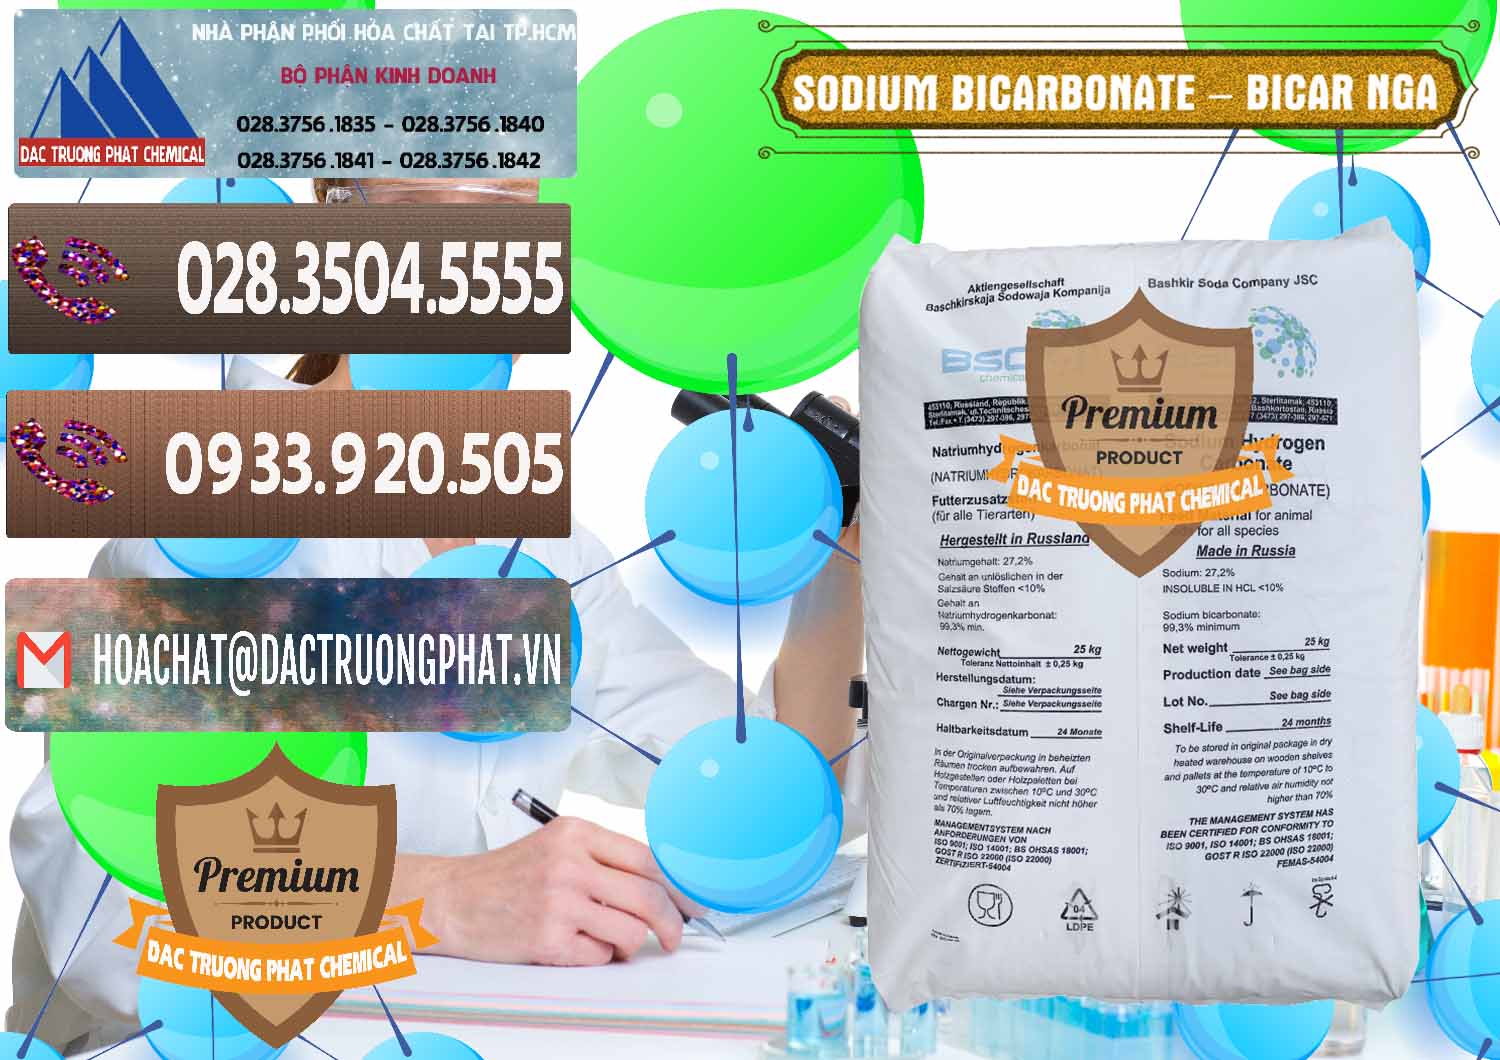 Nơi chuyên cung ứng & bán Sodium Bicarbonate – Bicar NaHCO3 Nga Russia - 0425 - Chuyên cung cấp & bán hóa chất tại TP.HCM - hoachatviet.net